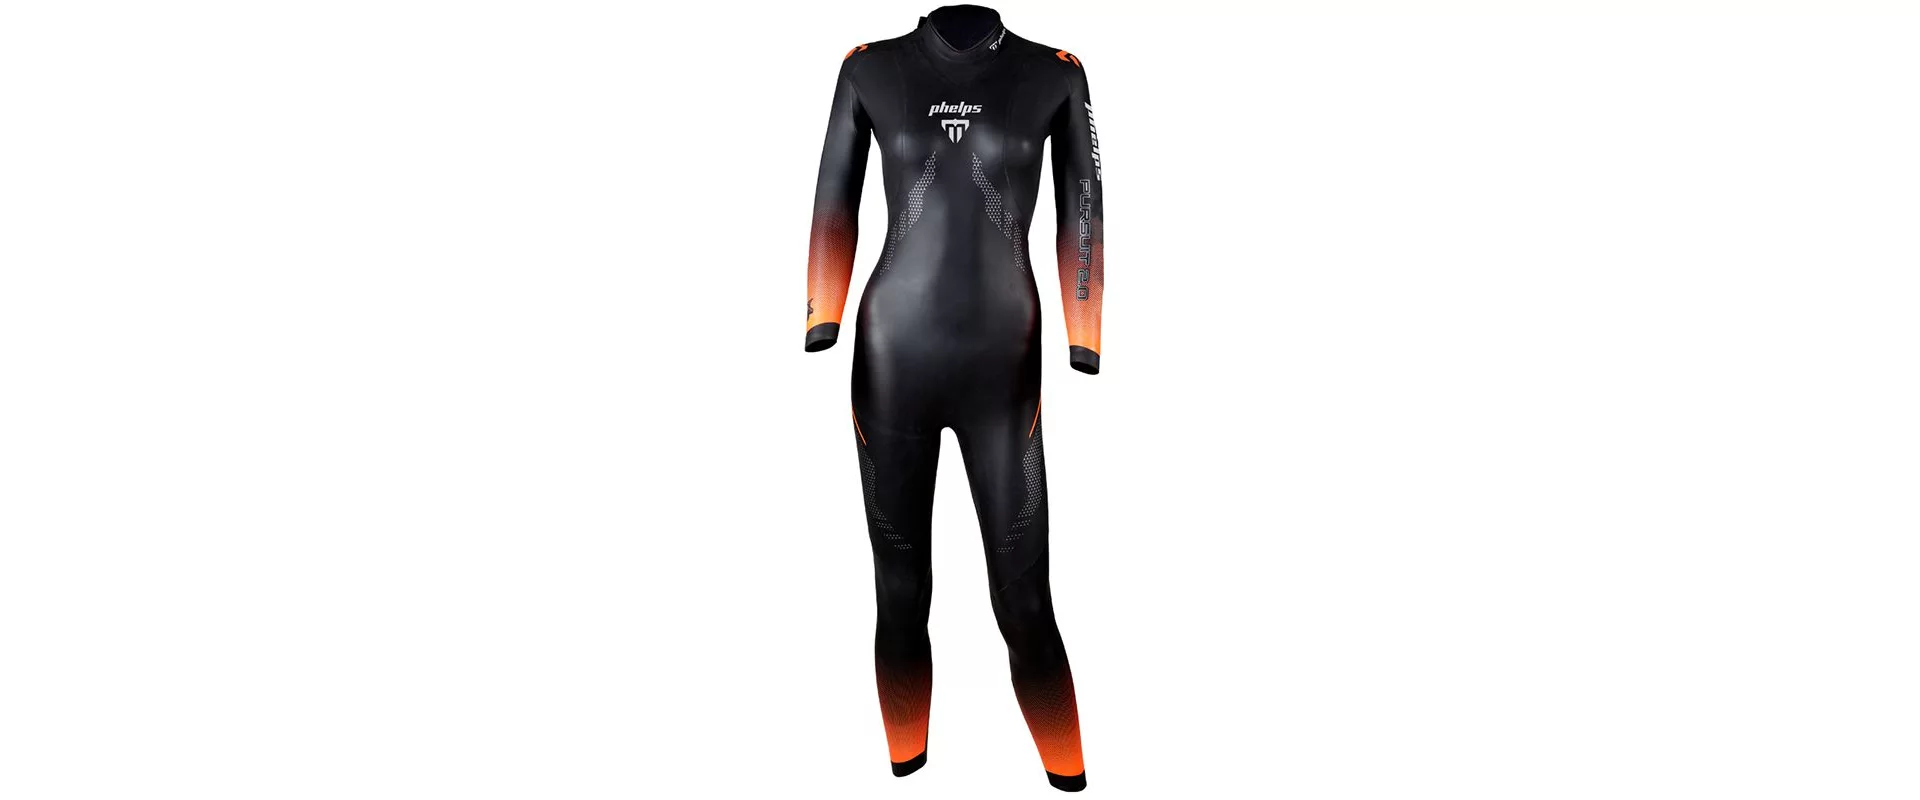 Phelps Pursuit Wetsuit W / Женский гидрокостюм для триатлона и откртыой воды